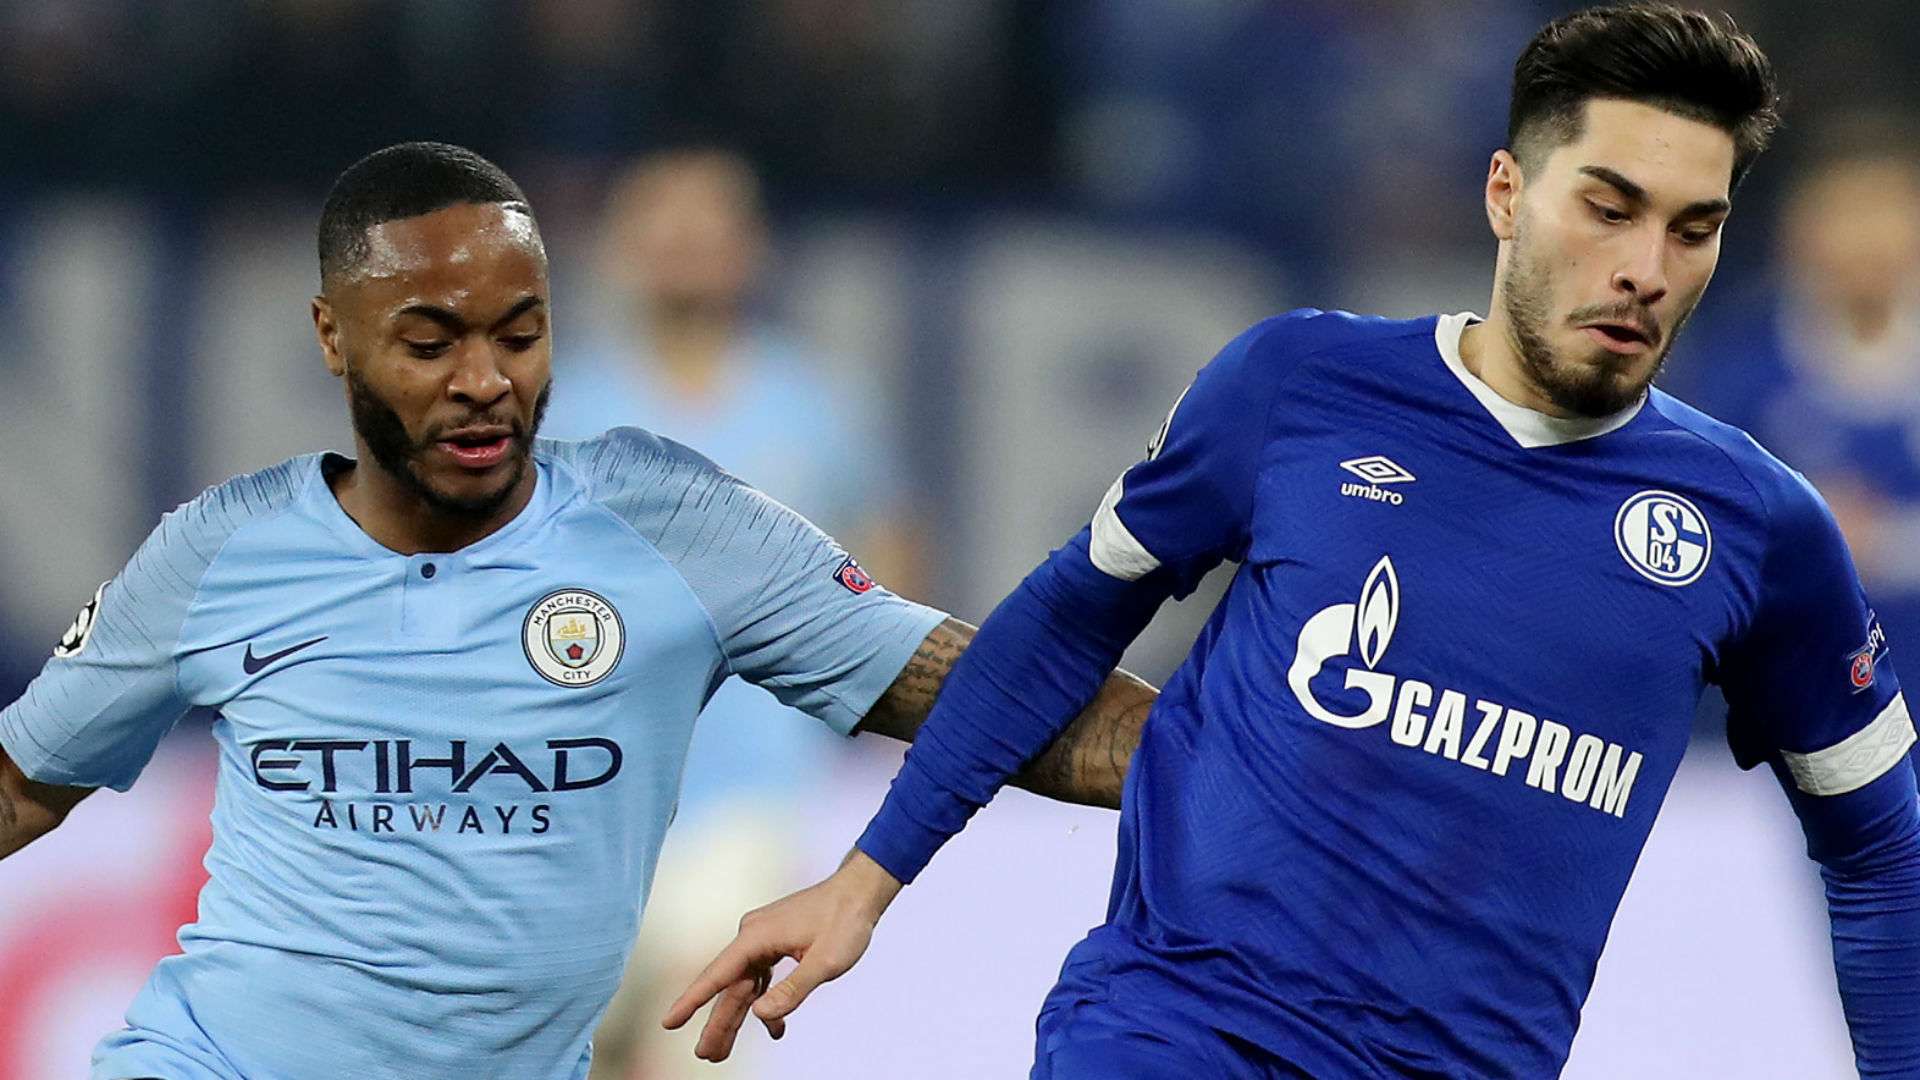 Raheem Sterling Manchester City Suat Serdar Schalke 2019